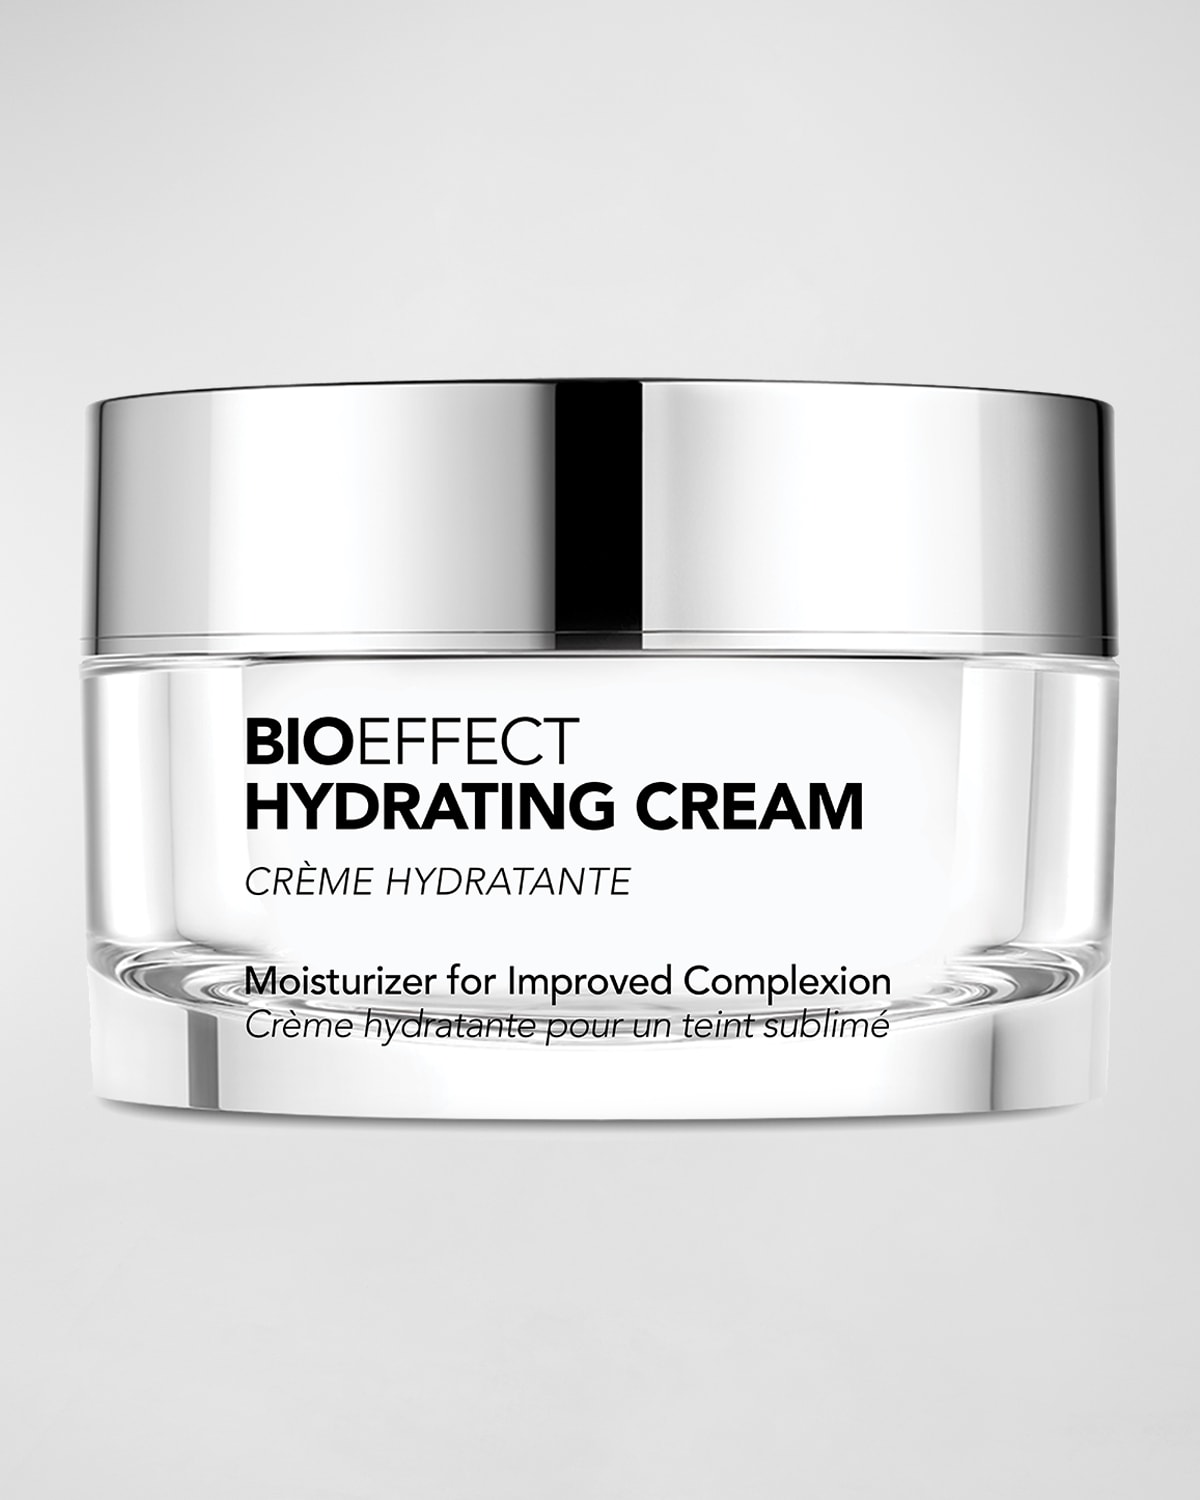 BIOEFFECT Hydrating Cream, 1.7 oz.